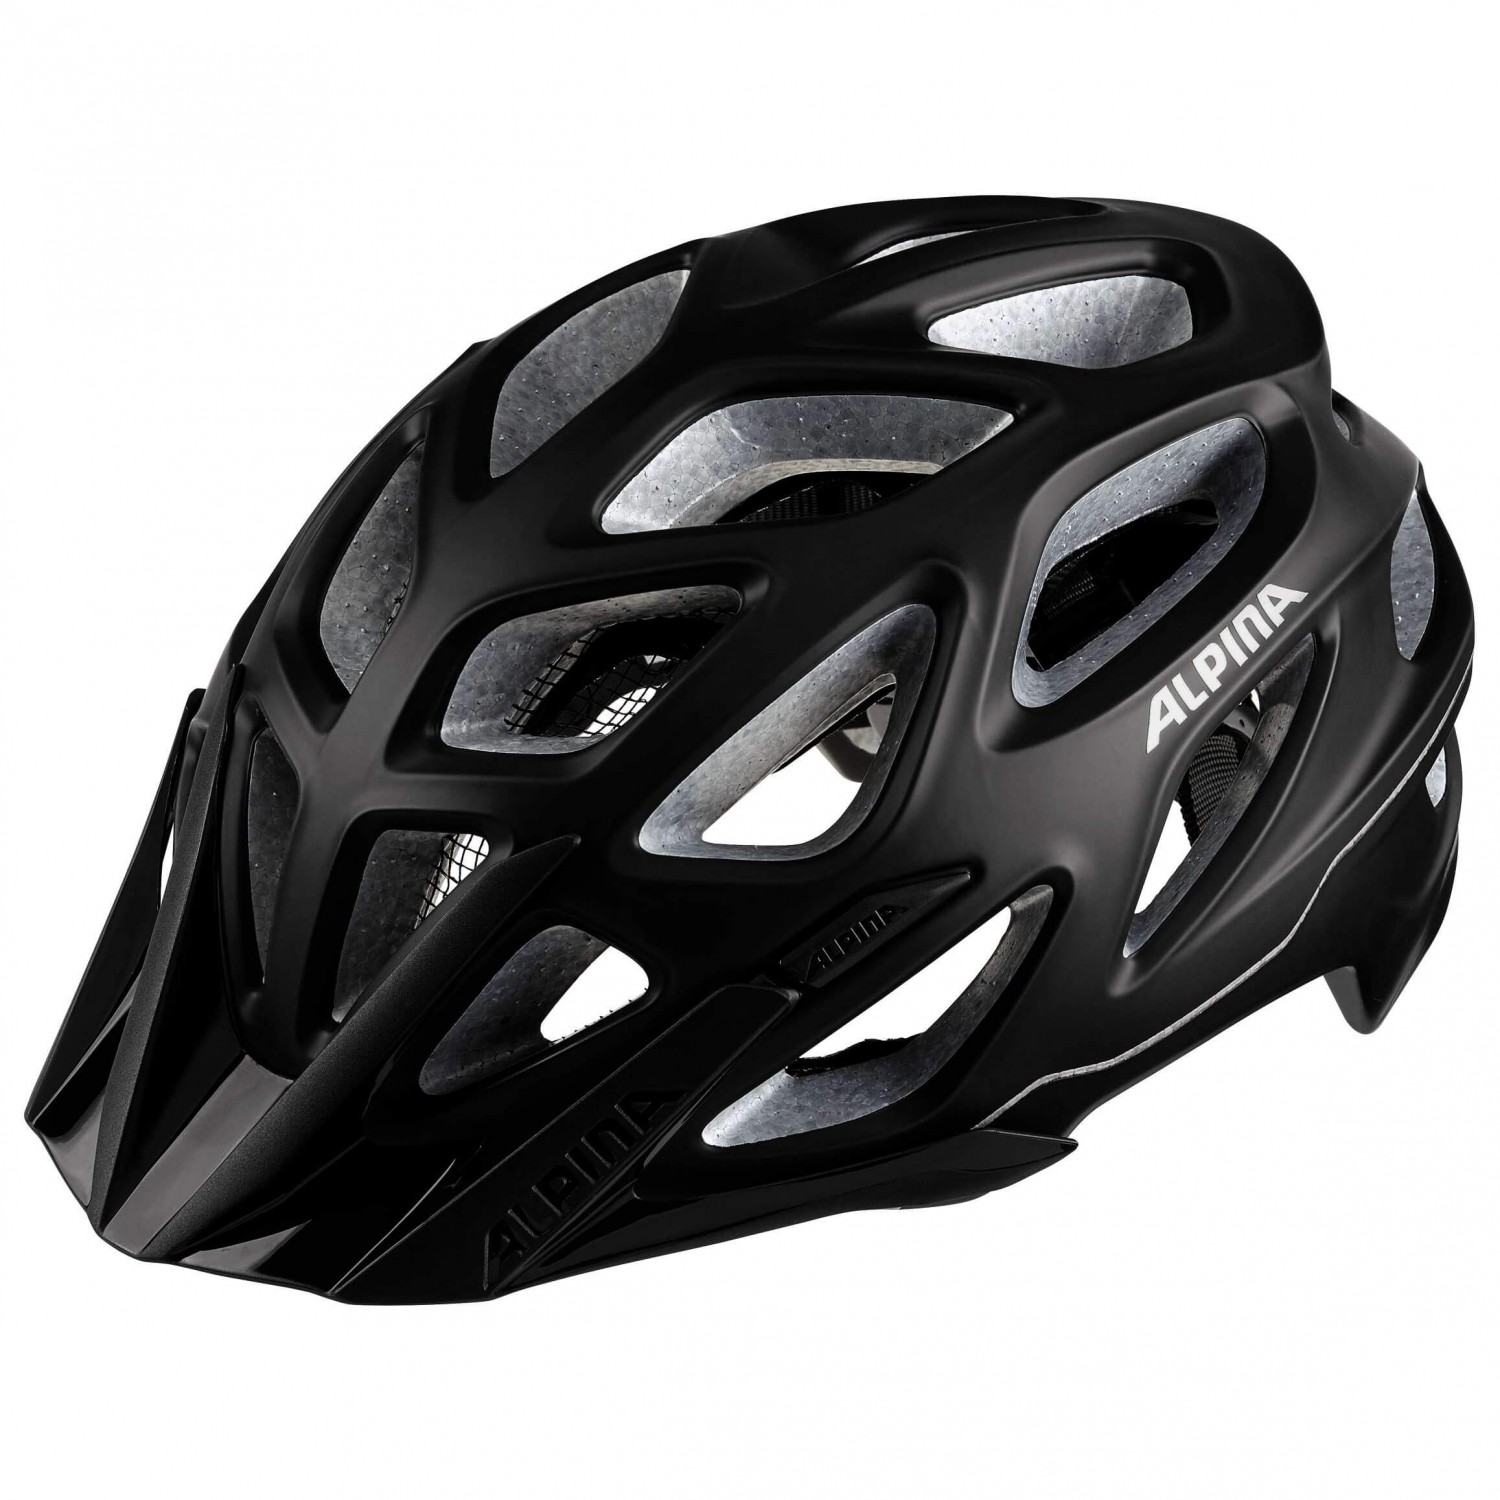 Велосипедный шлем Alpina Mythos 3 0 L E, цвет Black Matt велошлем alpina mythos reflective black matt см 59 64